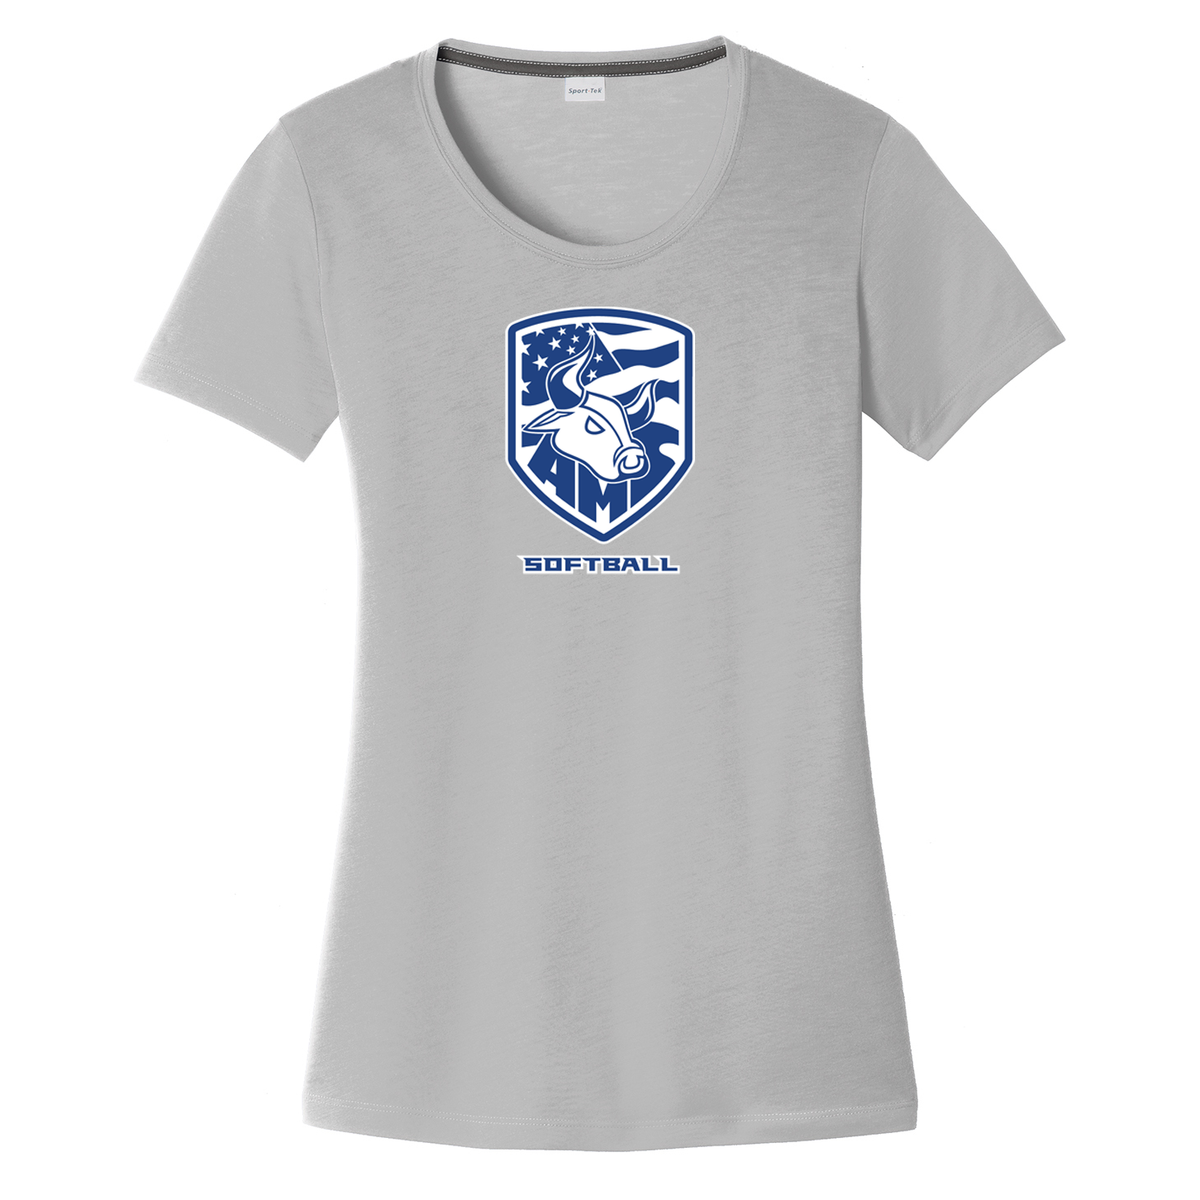 Accompsett Softball  Women's CottonTouch Performance T-Shirt